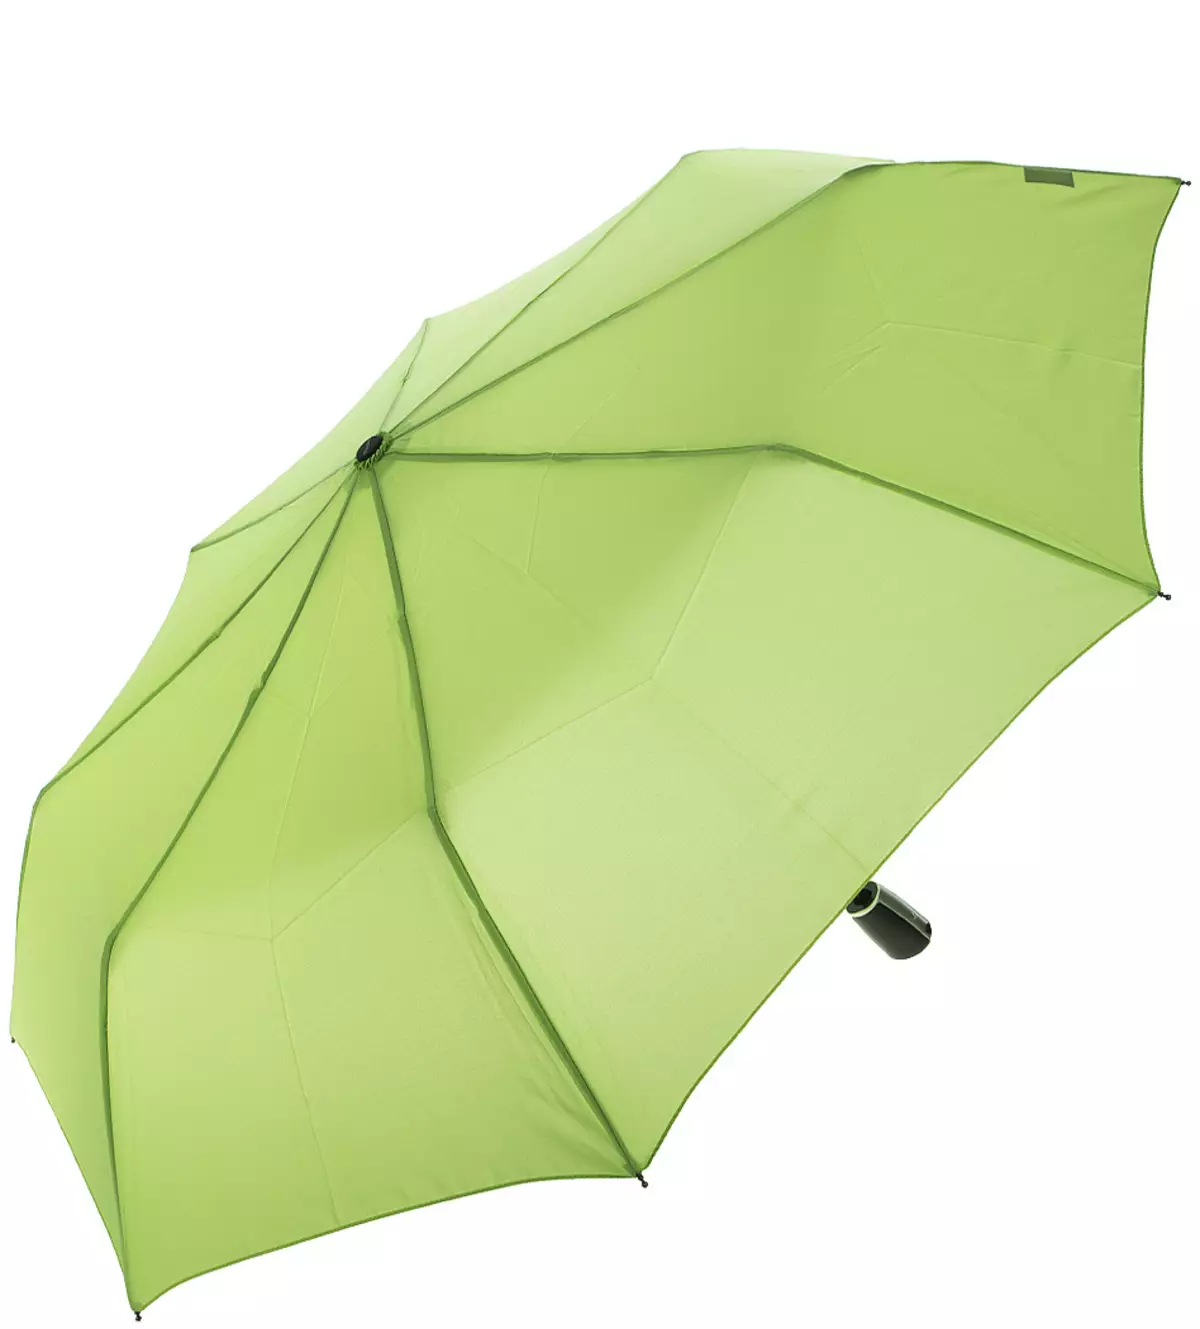 Doppler umbrellas (60 wêne): Modelên jin Cane û Folding, nirxandina Doppler 15227_17